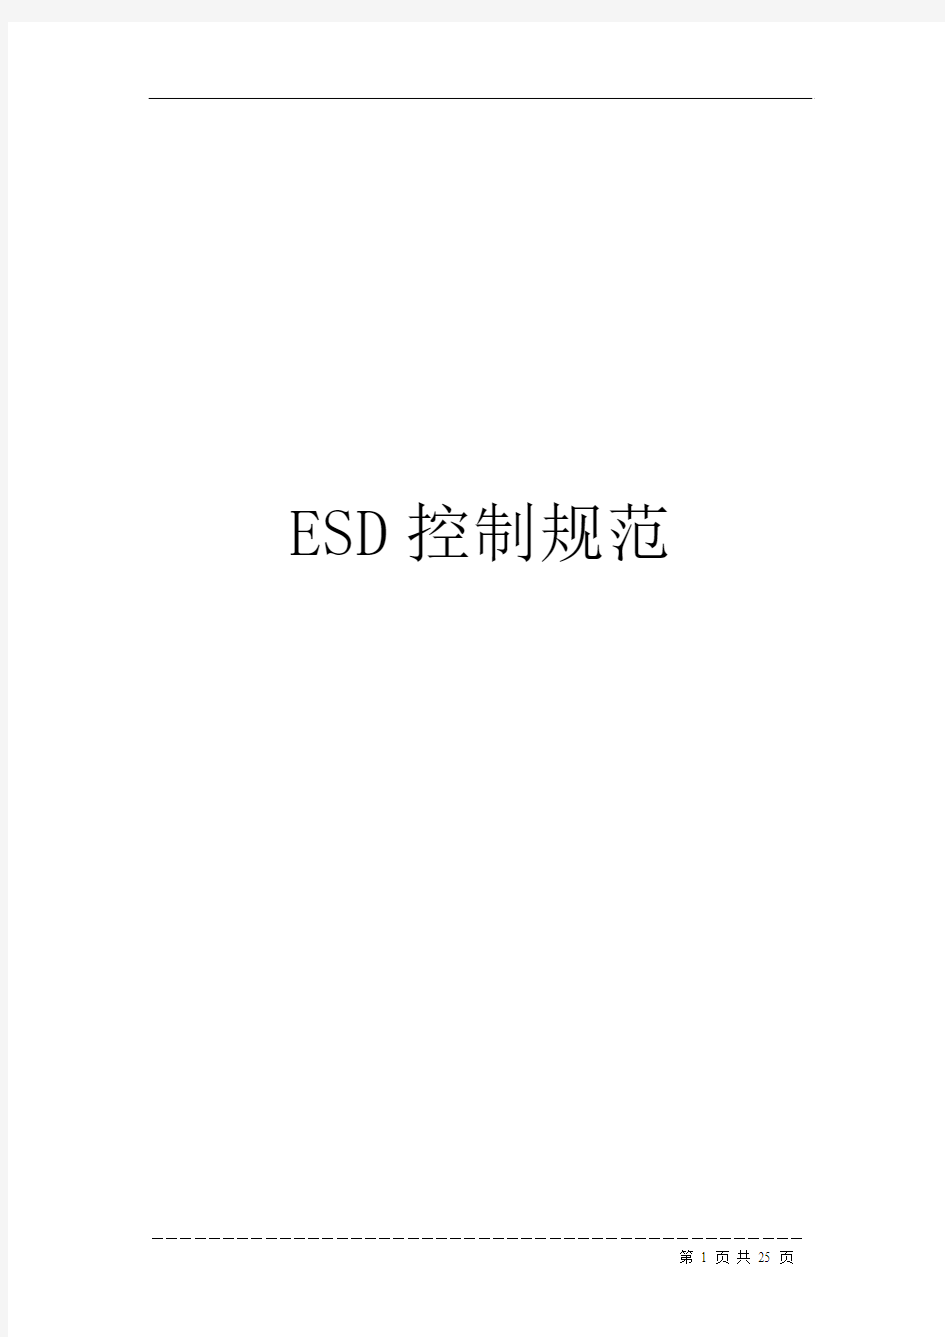 ESD控制技术规范[1]